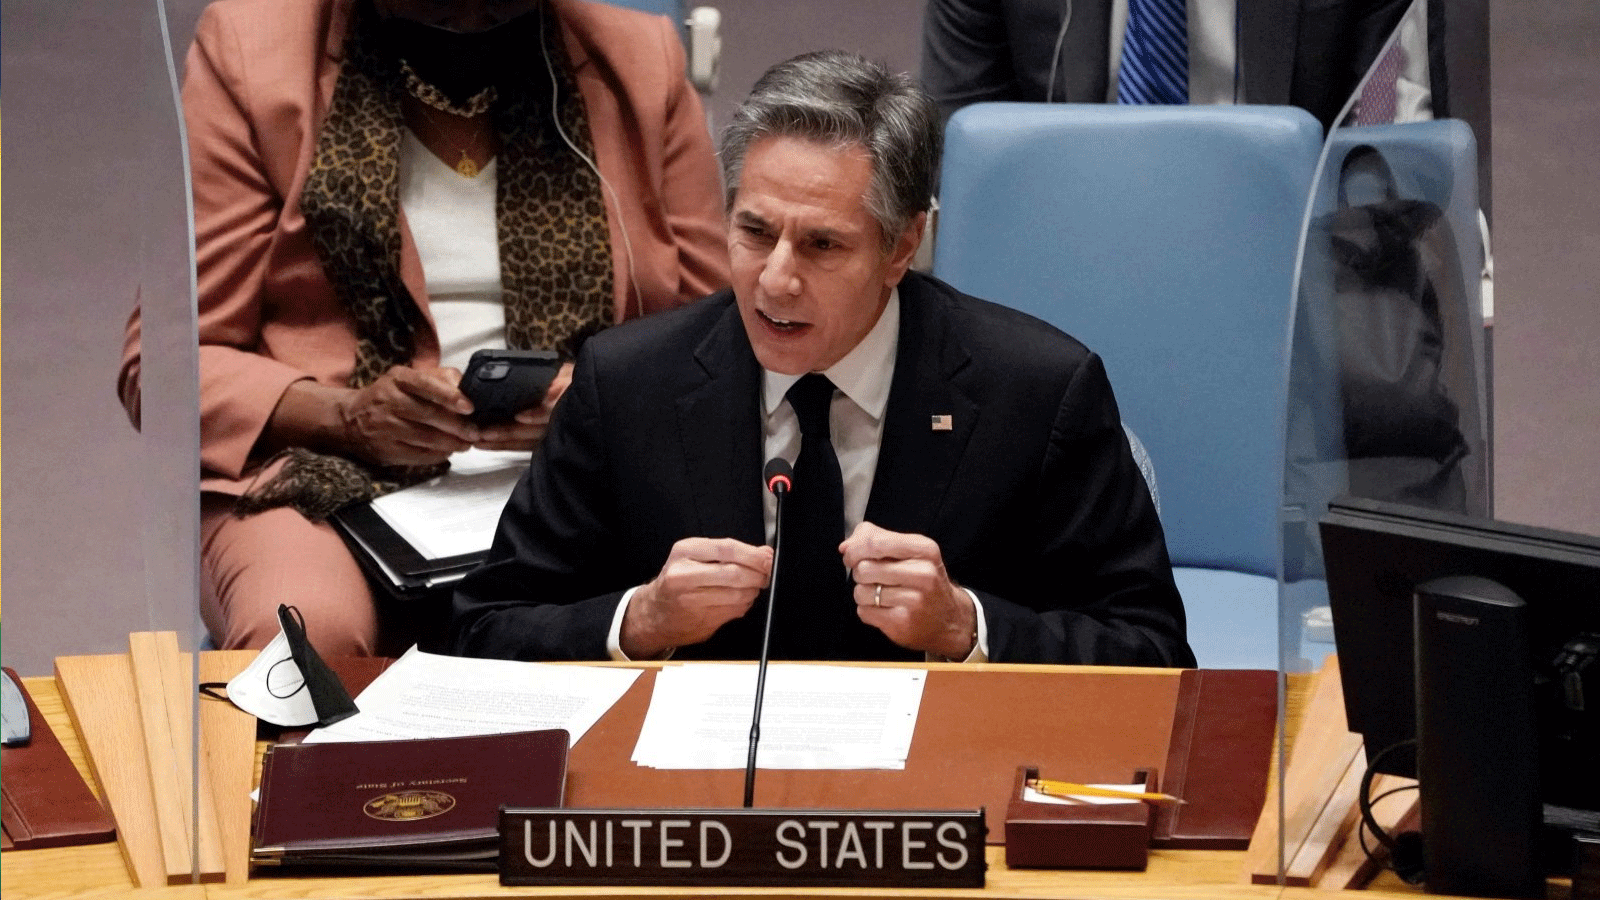 وزير الخارجية الأميركي أنتوني بلينكين يتحدث في اجتماع لمجلس الأمن التابع للأمم المتحدة بشأن أوكرانيا، في 17 شباط\فبراير 2022\ نيويورك